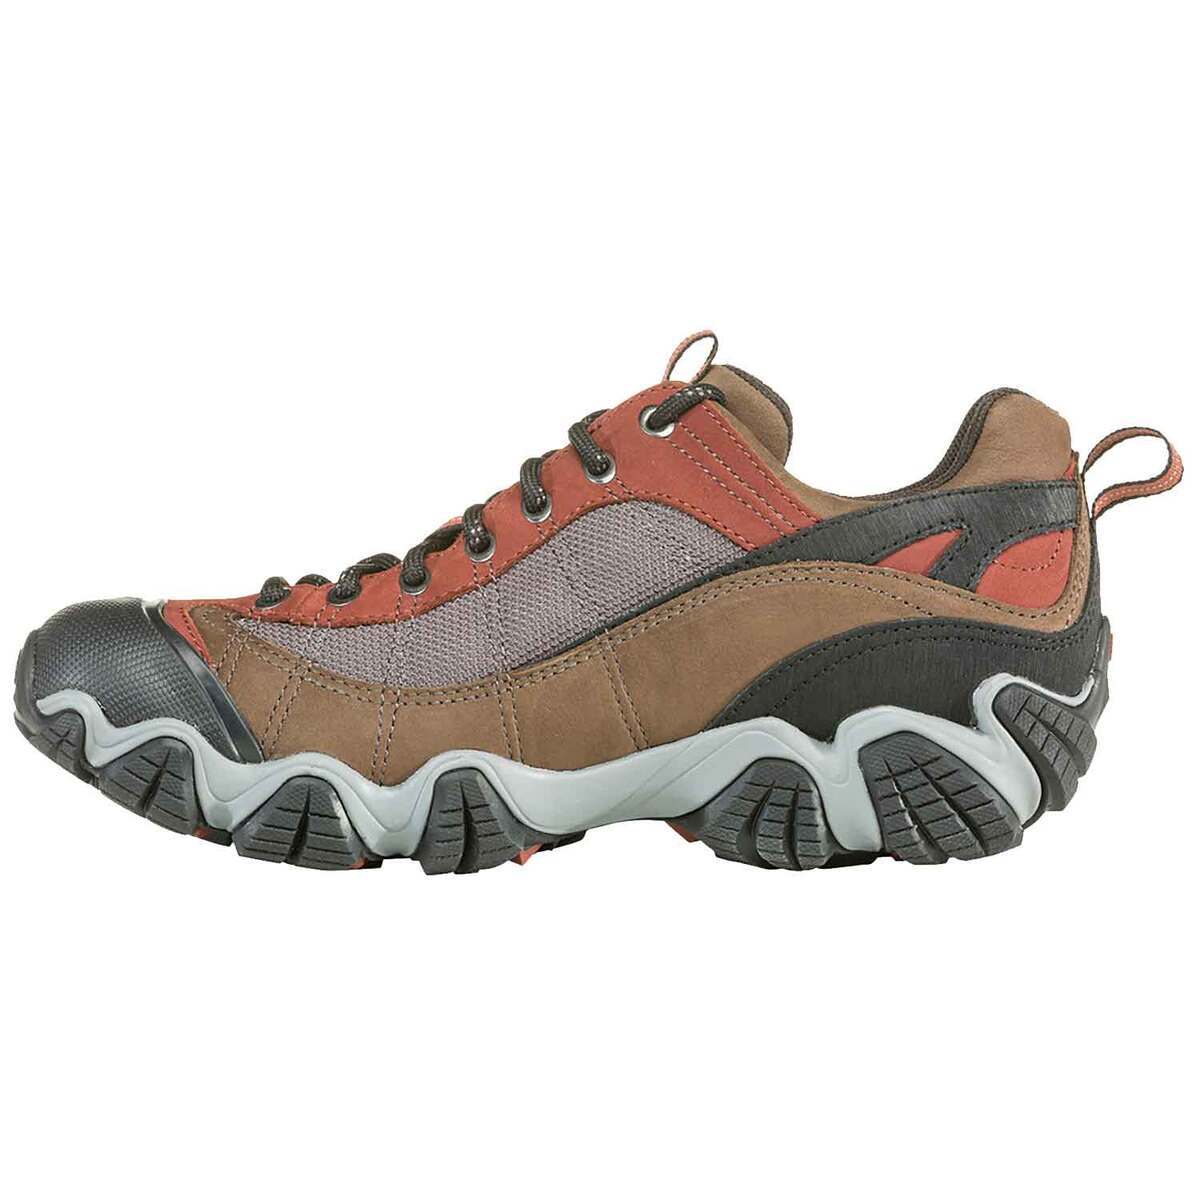 Oboz Men's Firebrand II Waterproof Low Trail Running Shoes | Sportsman ...